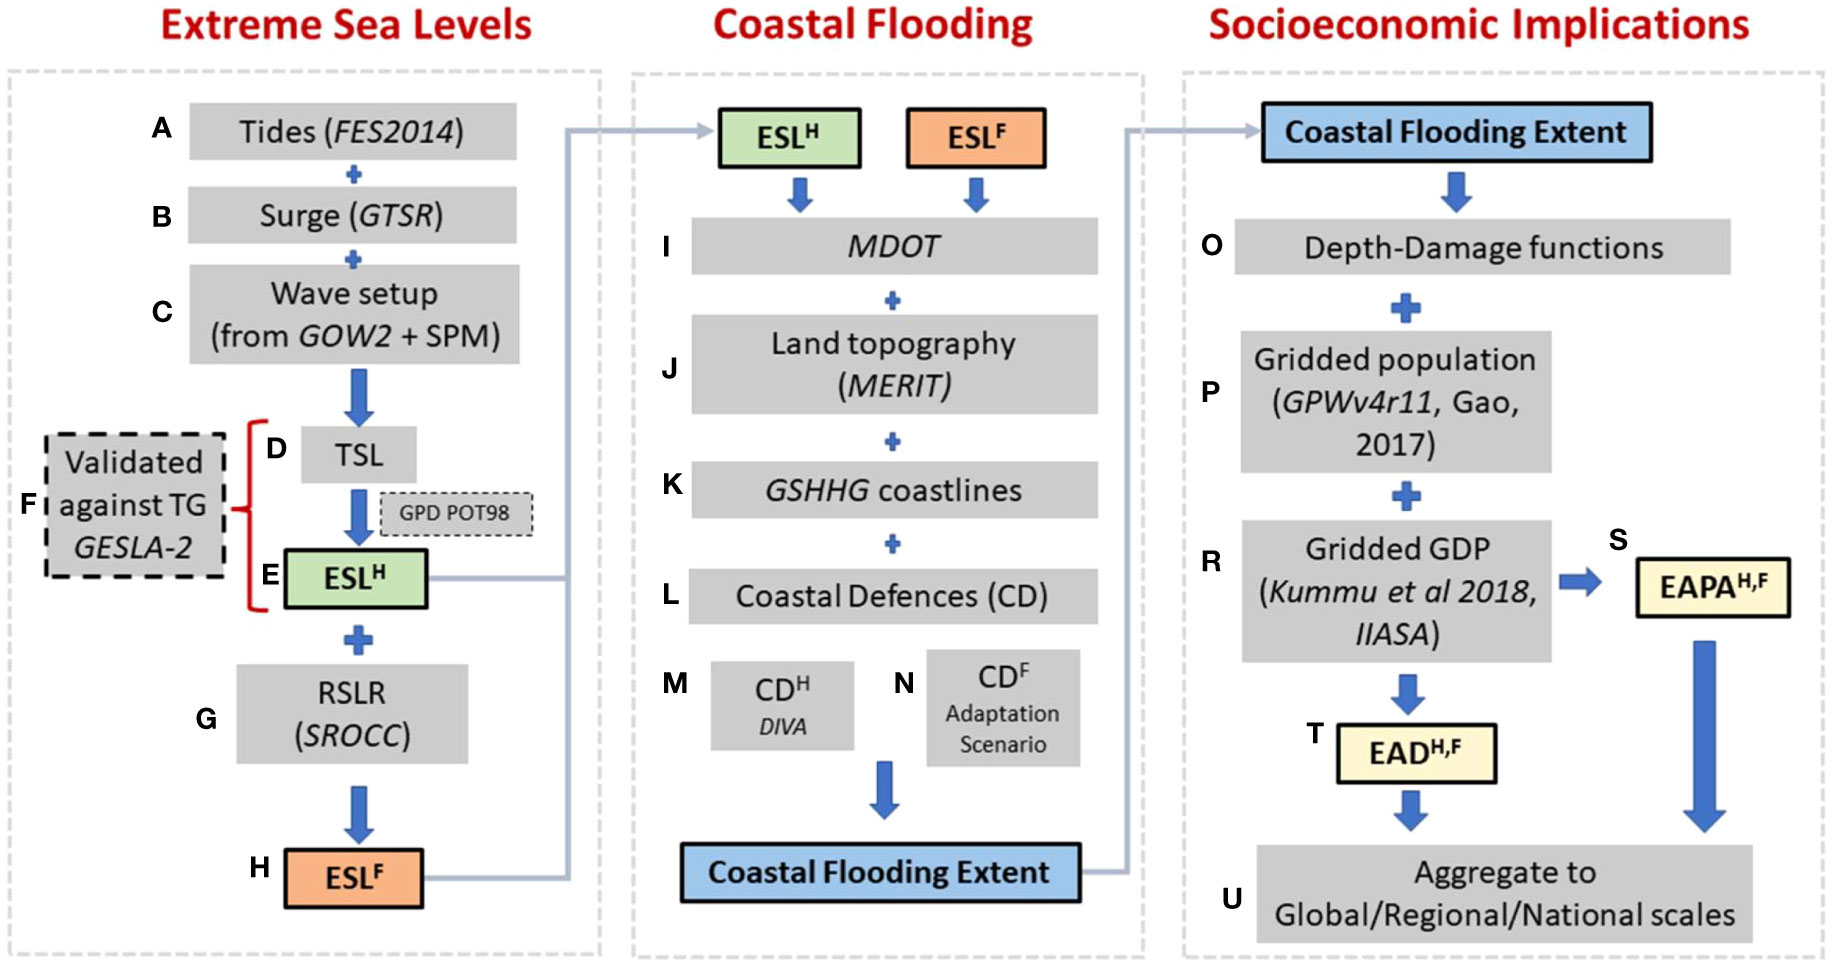 Representação esquemática dos processos utilizados na determinação dos Impactos Socioeconômicos das inundações costeiras extremas projetadas